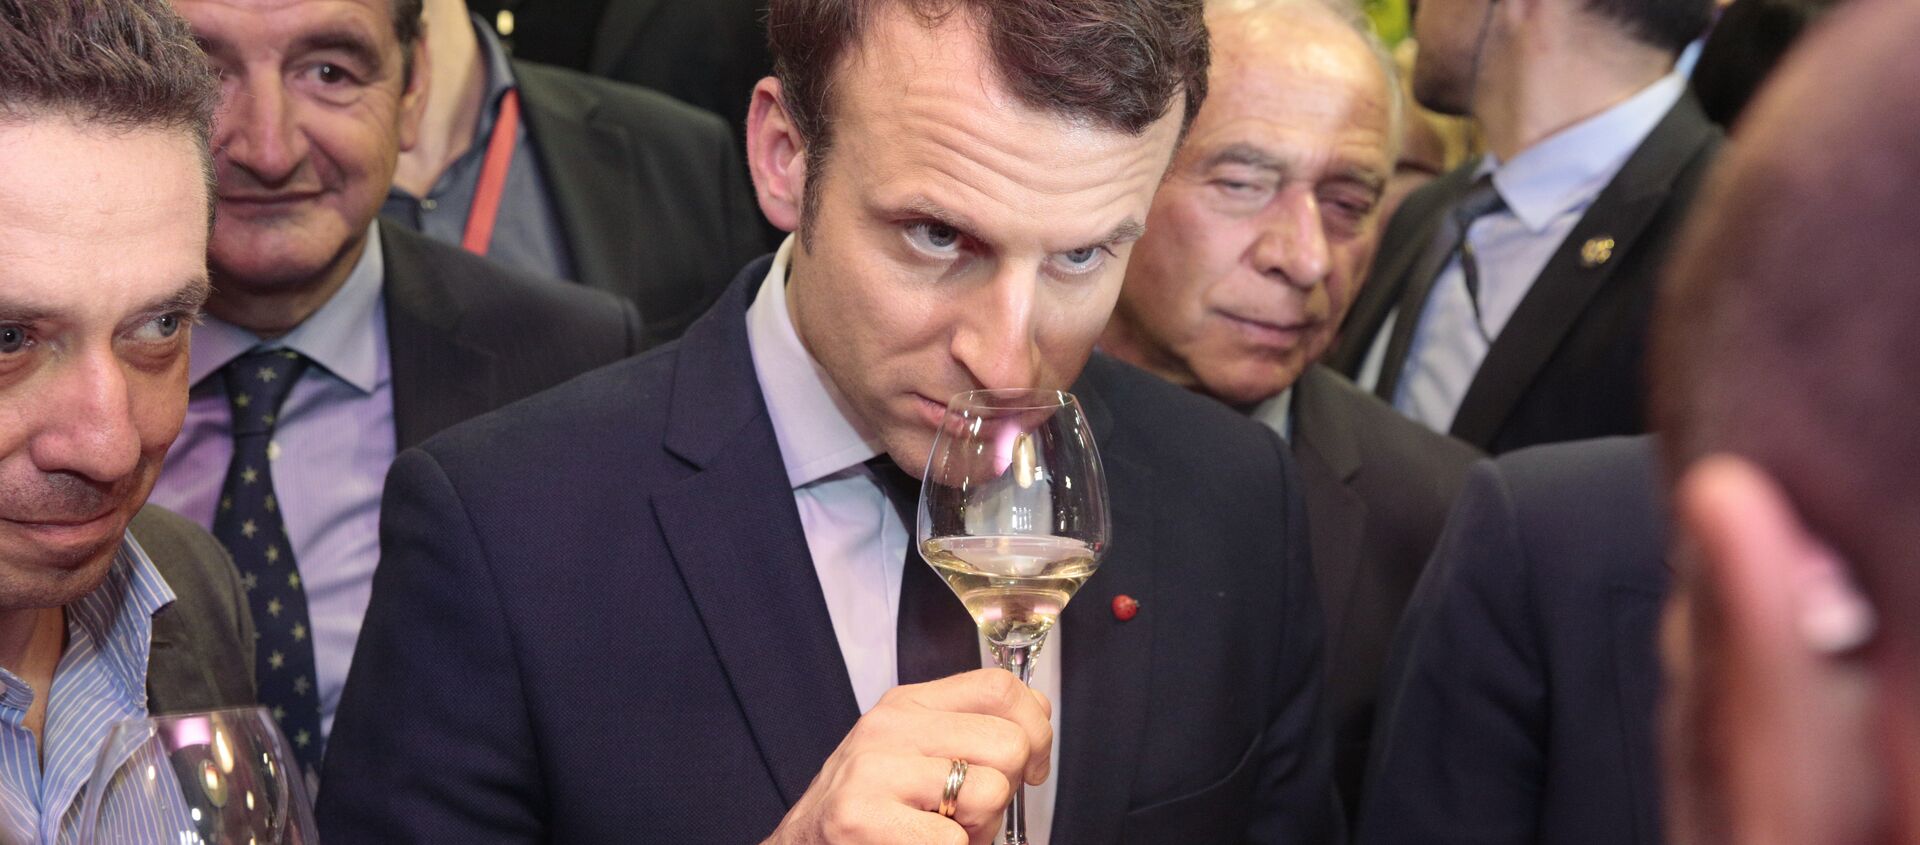 Emmanuel Macron Paris uluslararası tarım fuarı (Salon de l'agriculture) şarap testi 2017 - Sputnik Türkiye, 1920, 23.02.2018